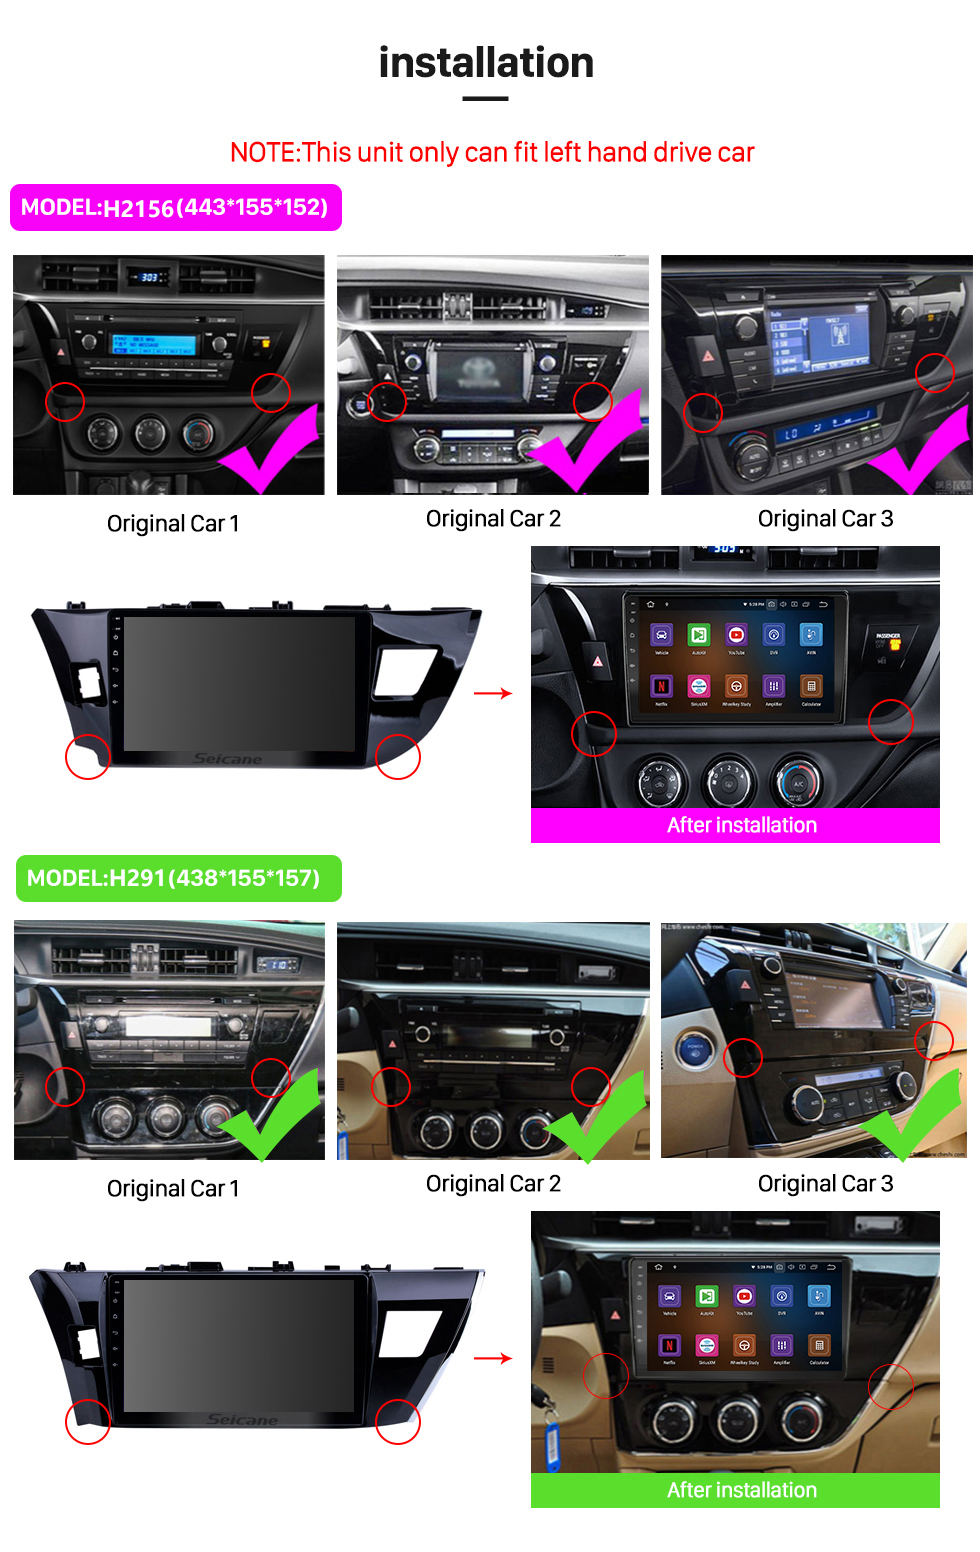 Seicane Toyota Corolla 11 2012-2014 2015 2016 E170 E180 Android 12.0 Rádio DVD player sistema de navegação Bluetooth HD 1024*600 tela sensível ao toque Unidade principal com OBD2 DVR Câmera retrovisora TV 1080P Vídeo 3G WIFI Volante Controle USB Link do espelho